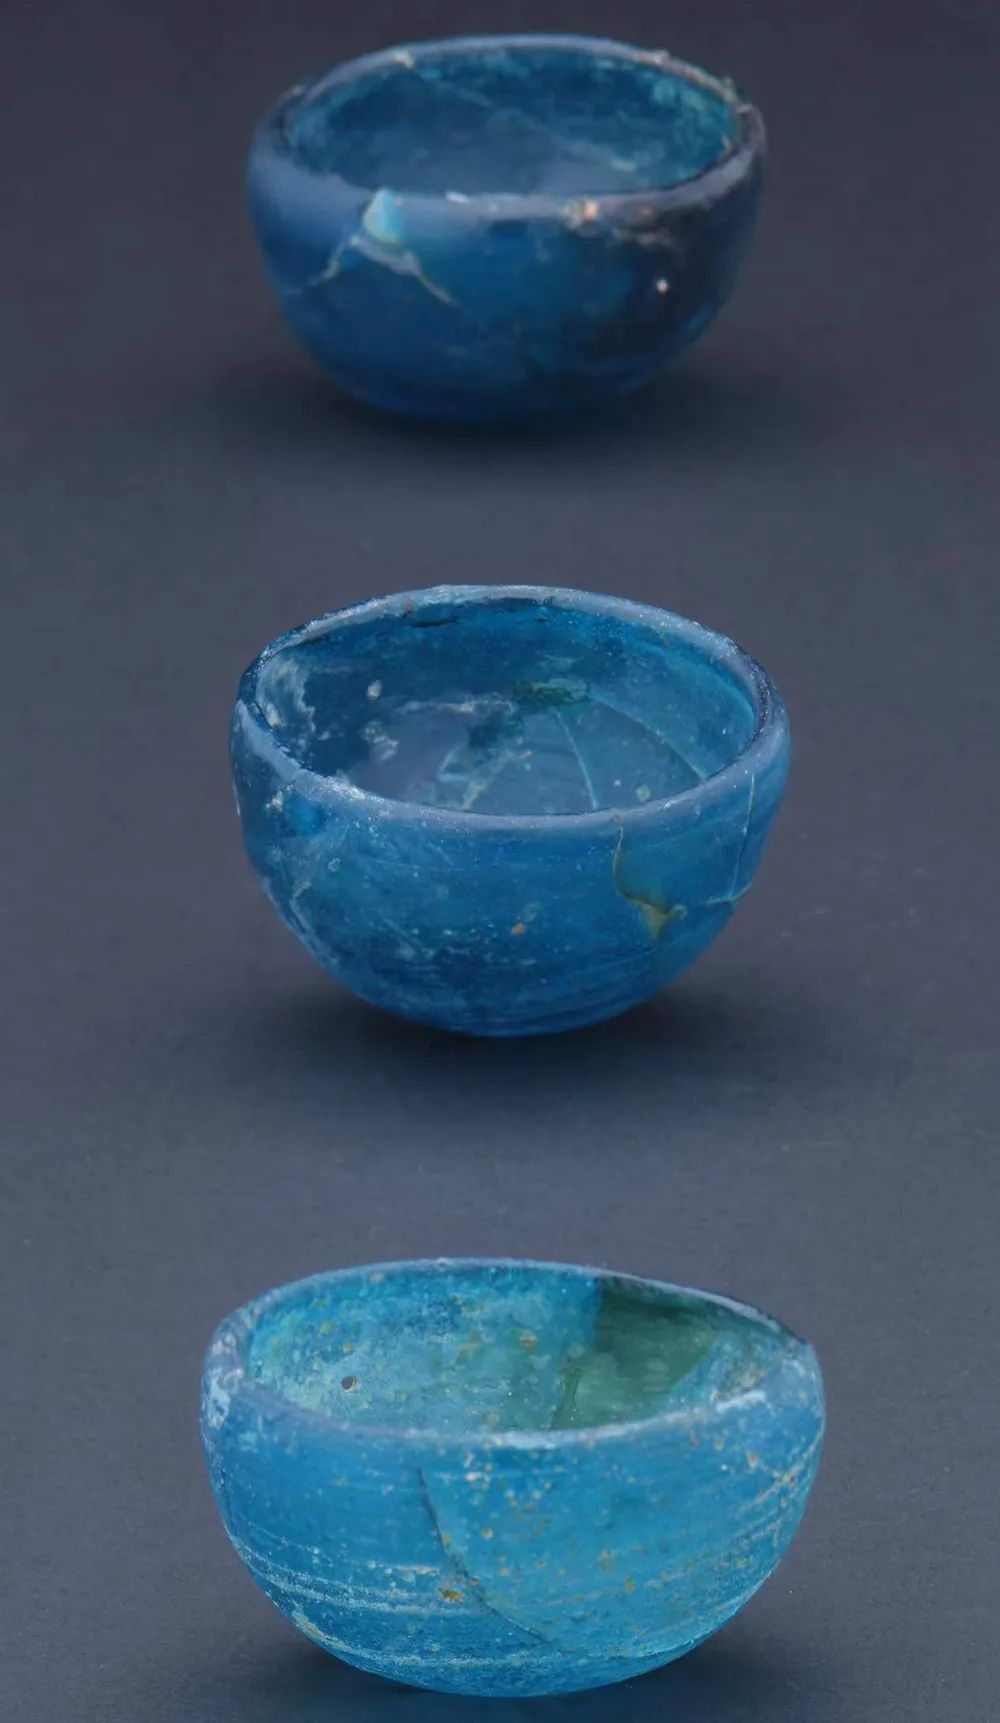 玻璃钵,北魏， 386-534 年, 大同迎宾大道北魏墓群出土，大同市博物馆藏